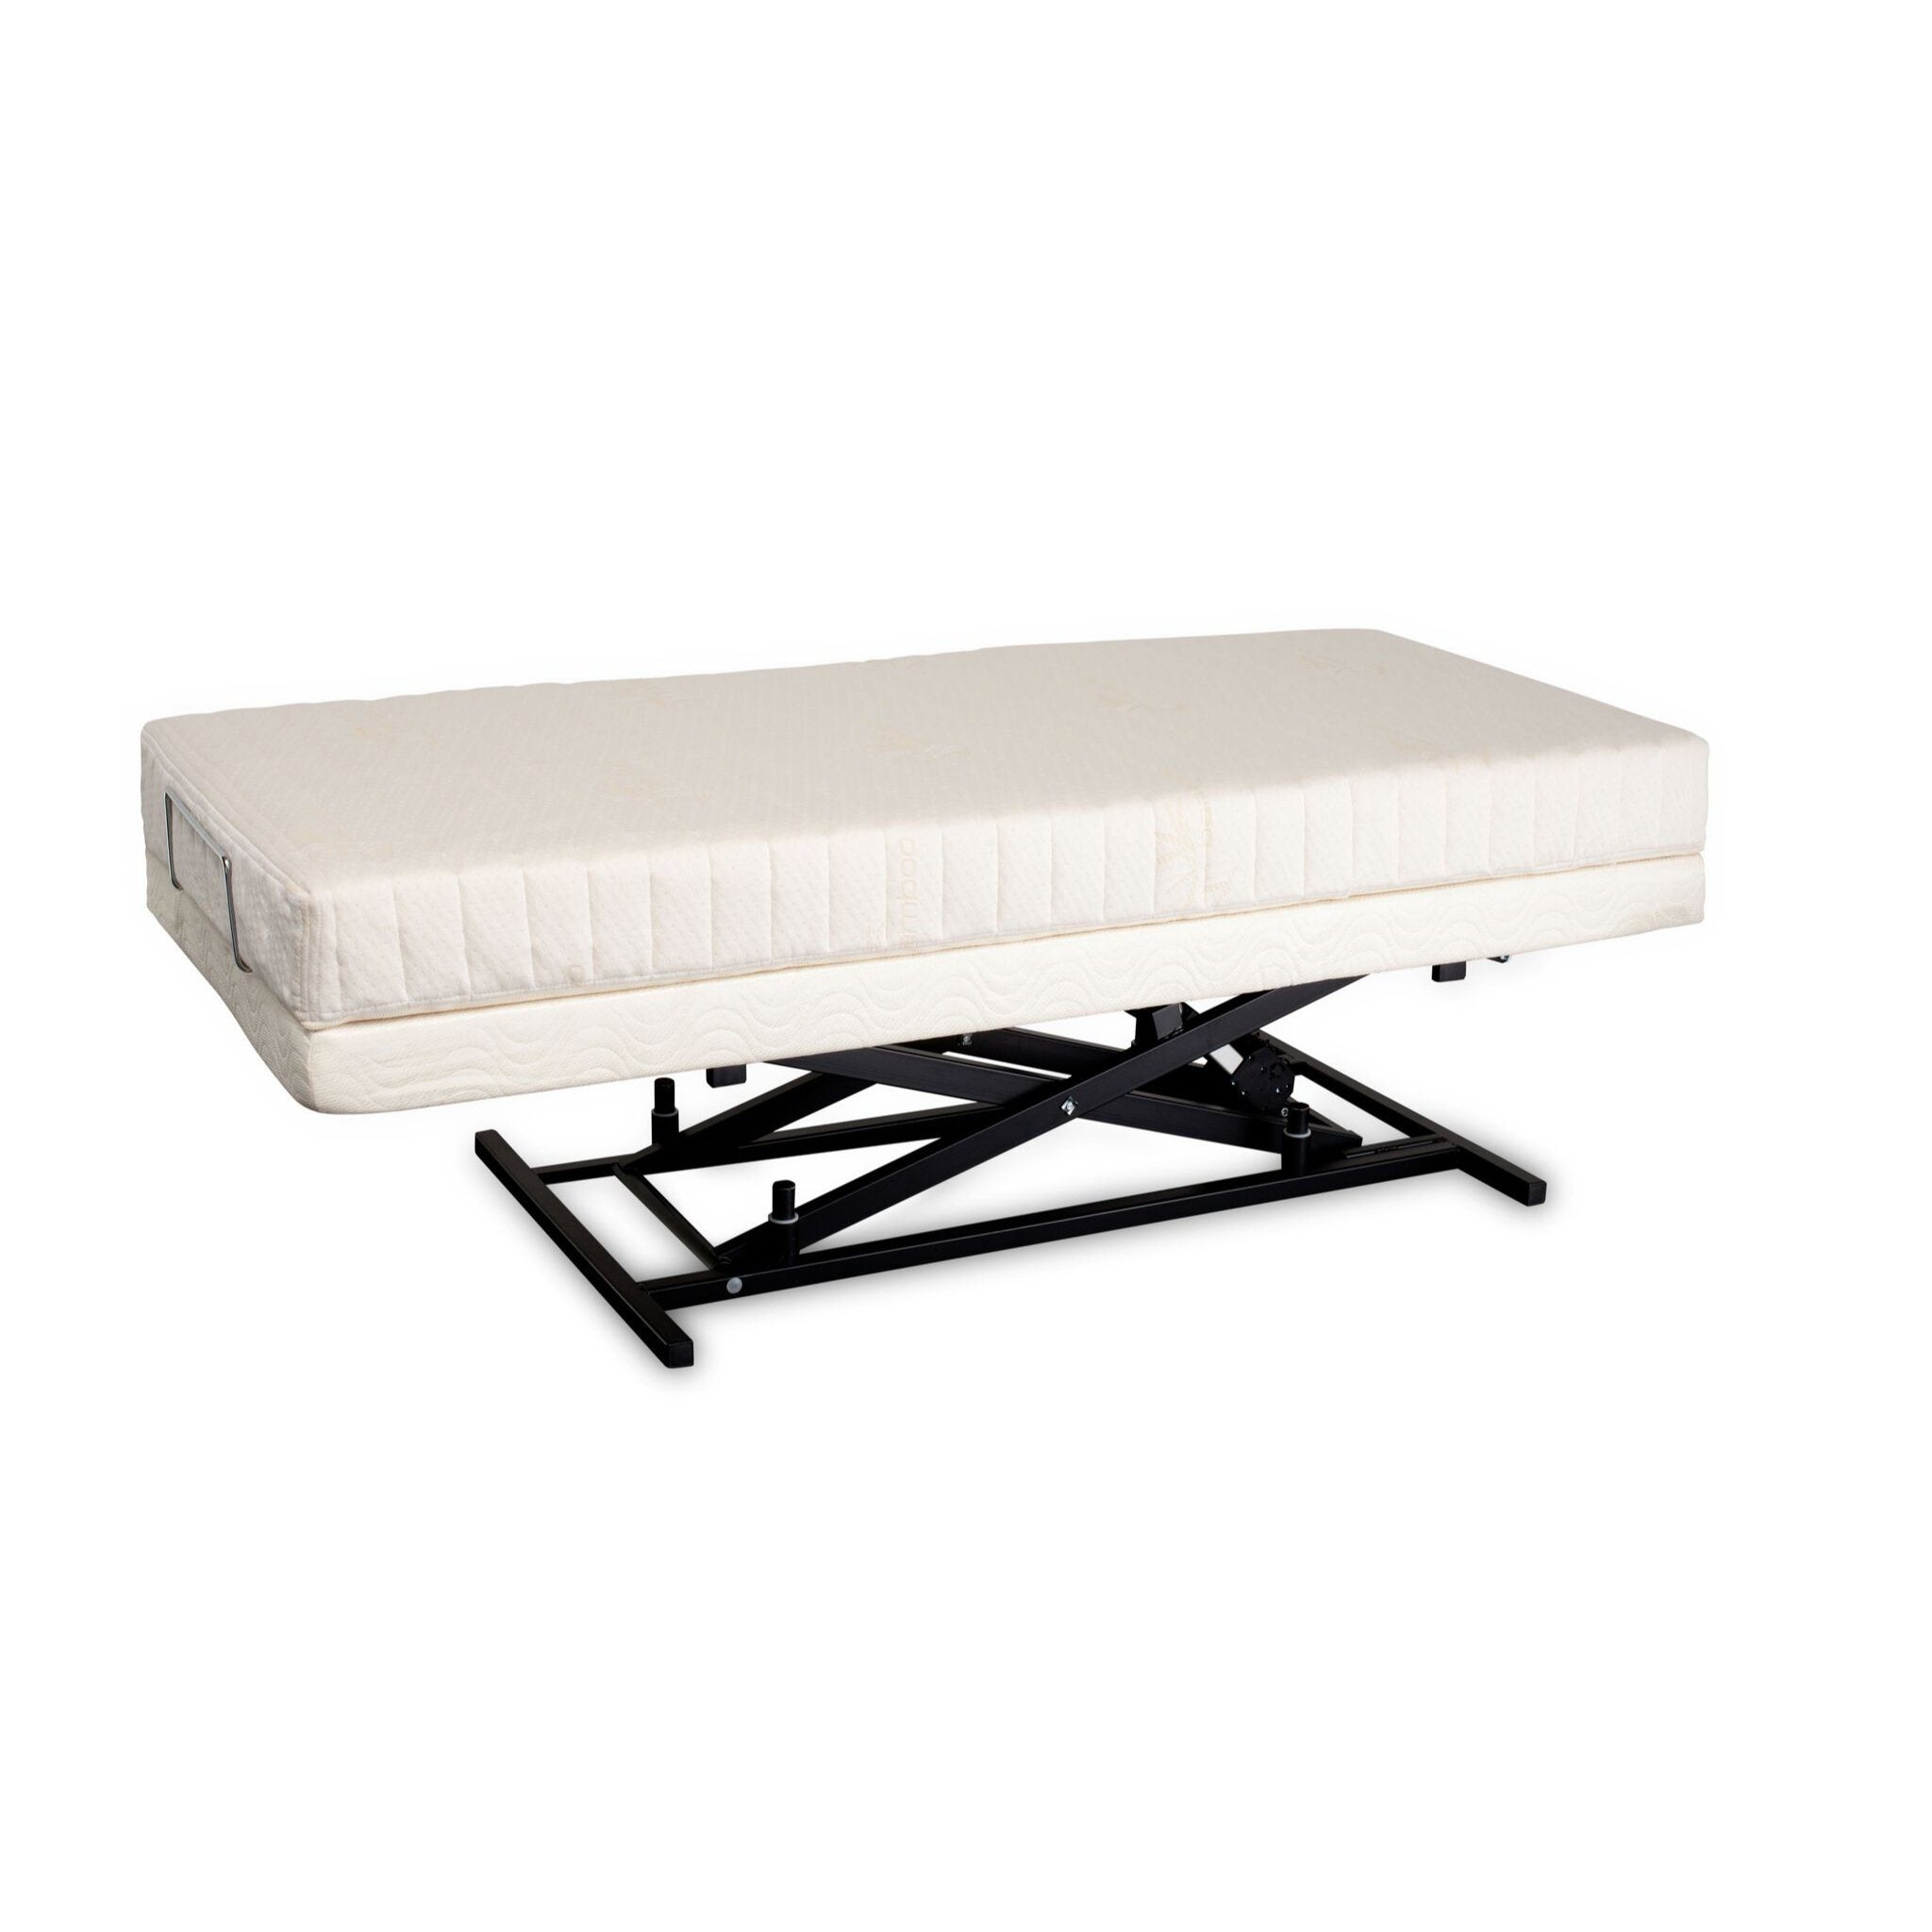 Transfer Master Supernal Hi-Low Adjustable Bed